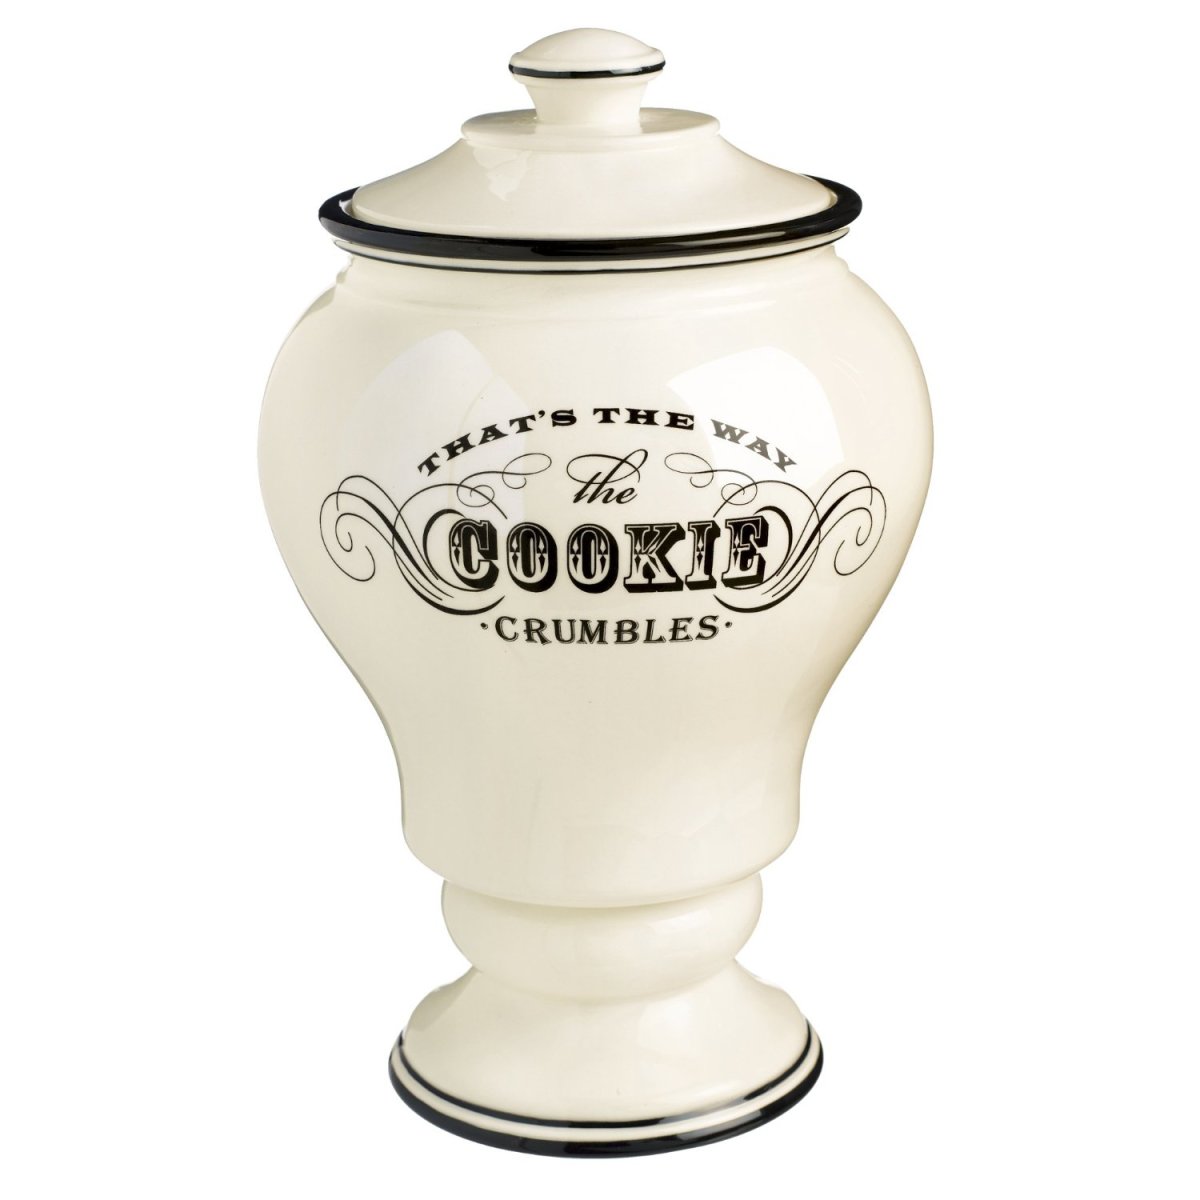 Vintage inspired ceramic cookie jar.